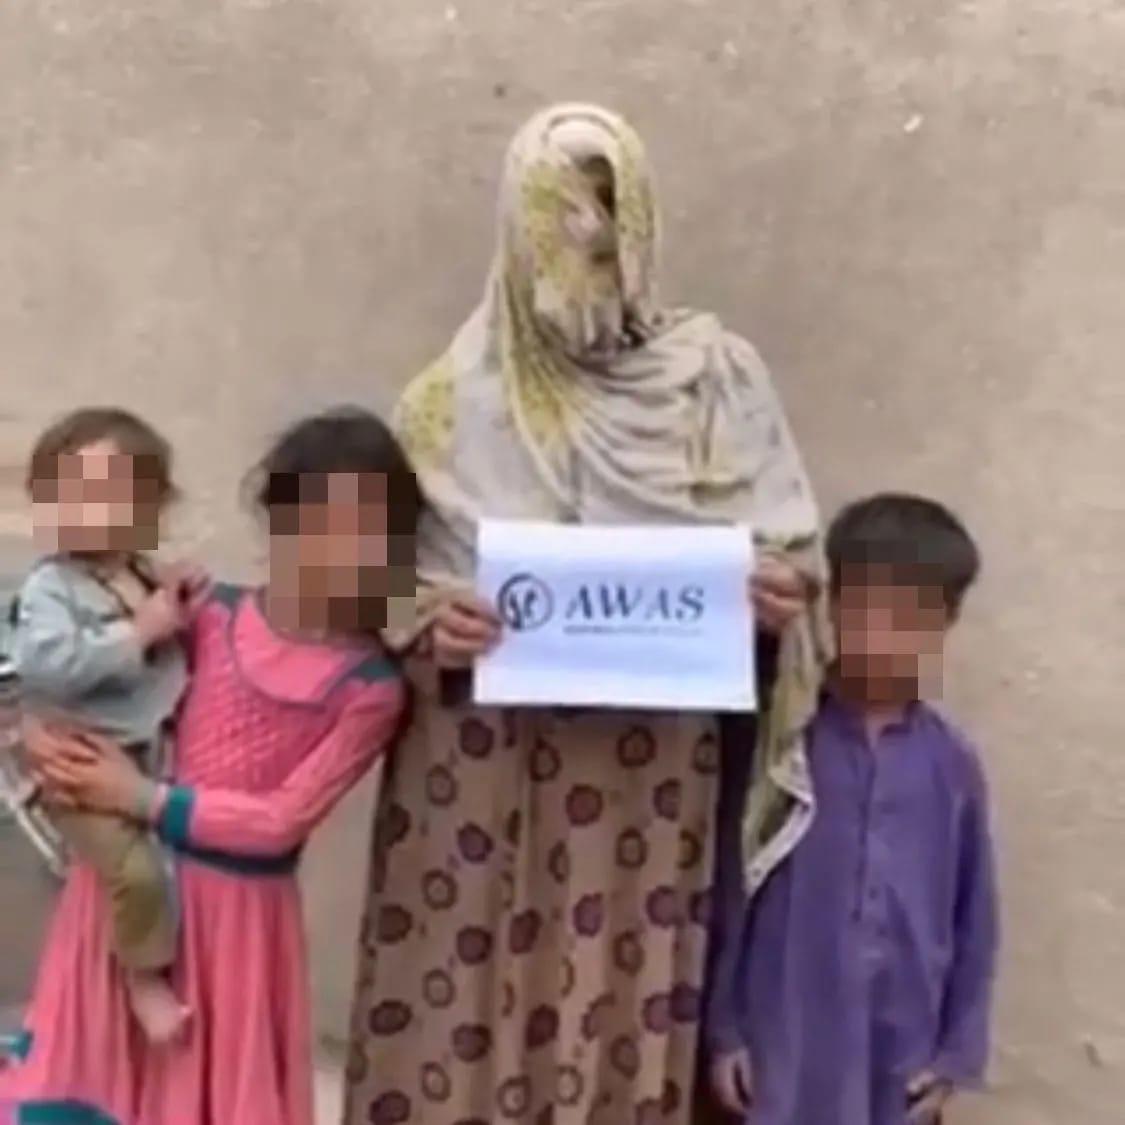 Une bénéficiaire de l'aide d'AWAS en Afghanistan prend la pose avec ses enfants et le logo de l'association. ©AWAS